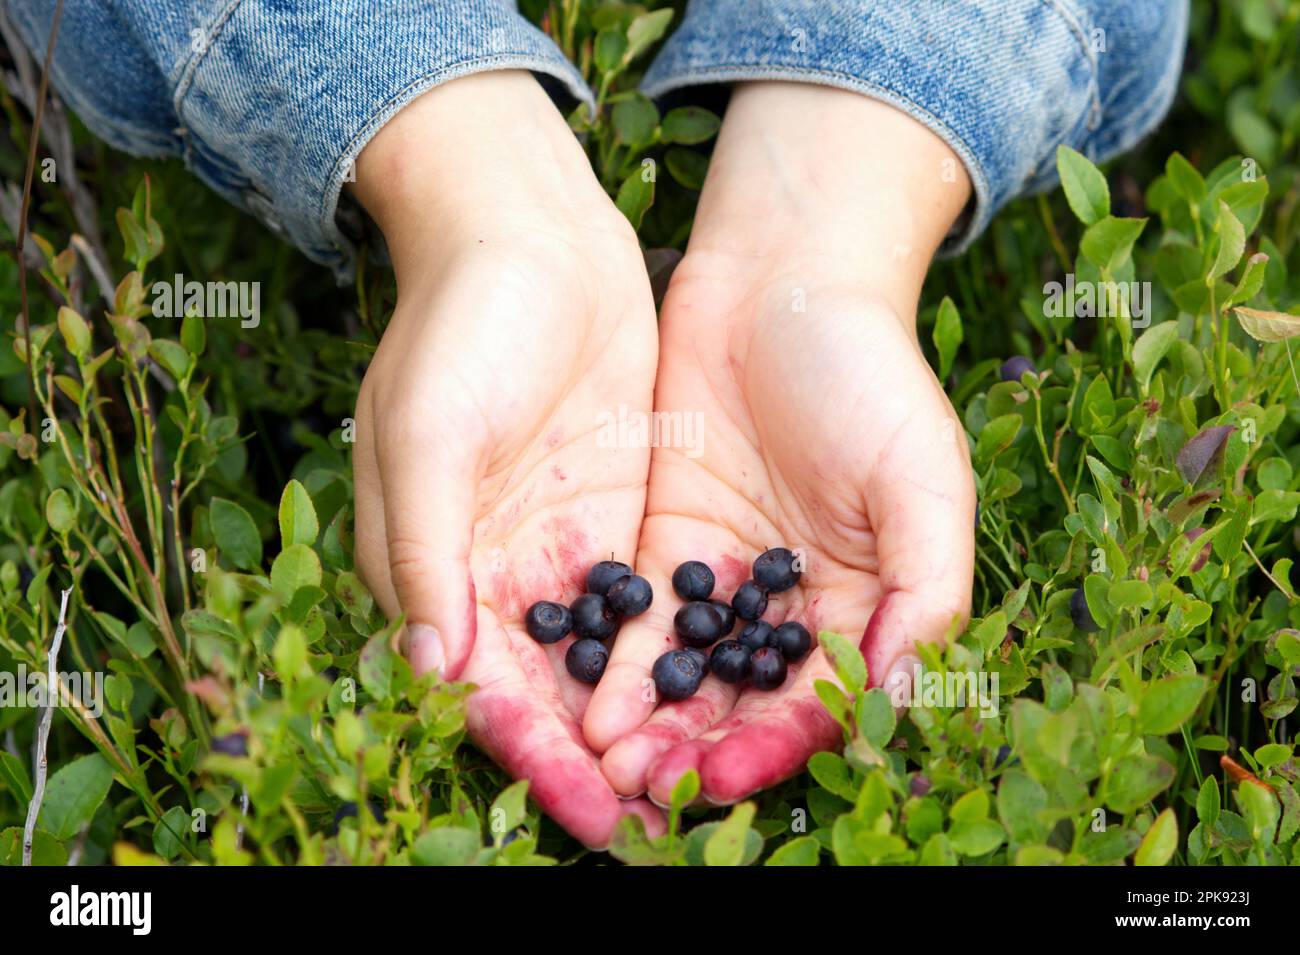 Mains présentant des bleuets collectés dans une forêt suédoise Banque D'Images